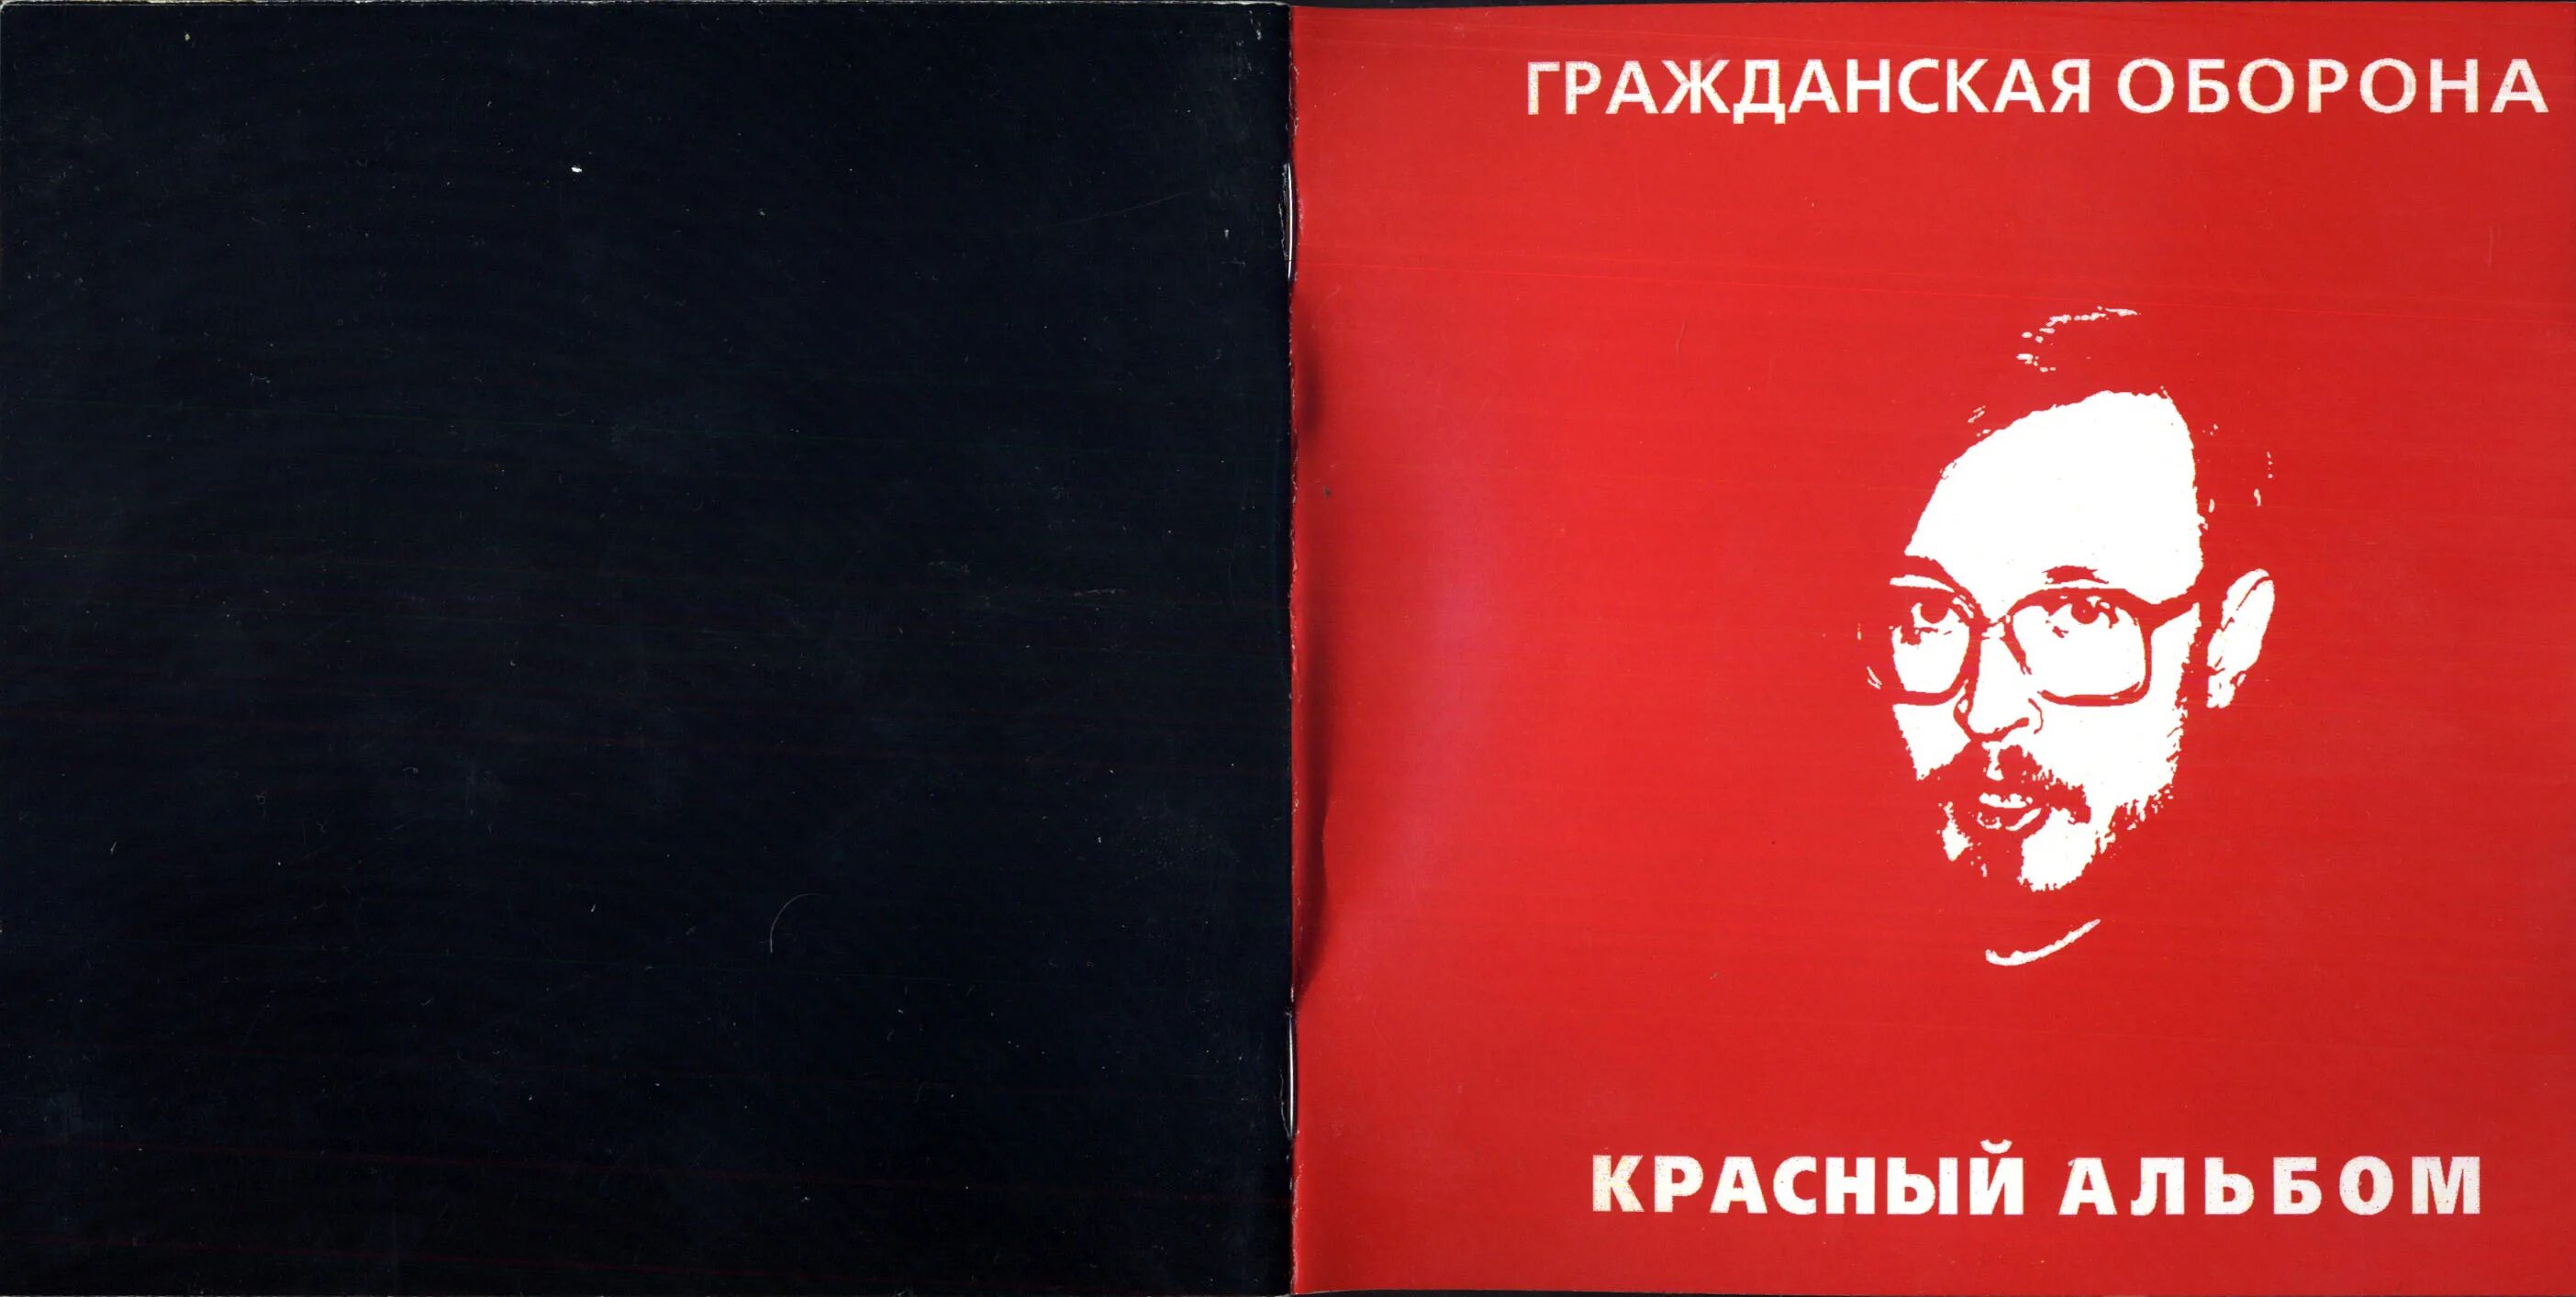 Красный альбом обложка. Красный альбом Гражданская оборона. Летов красный альбом. Гражданская оборона красный альбом обложка.